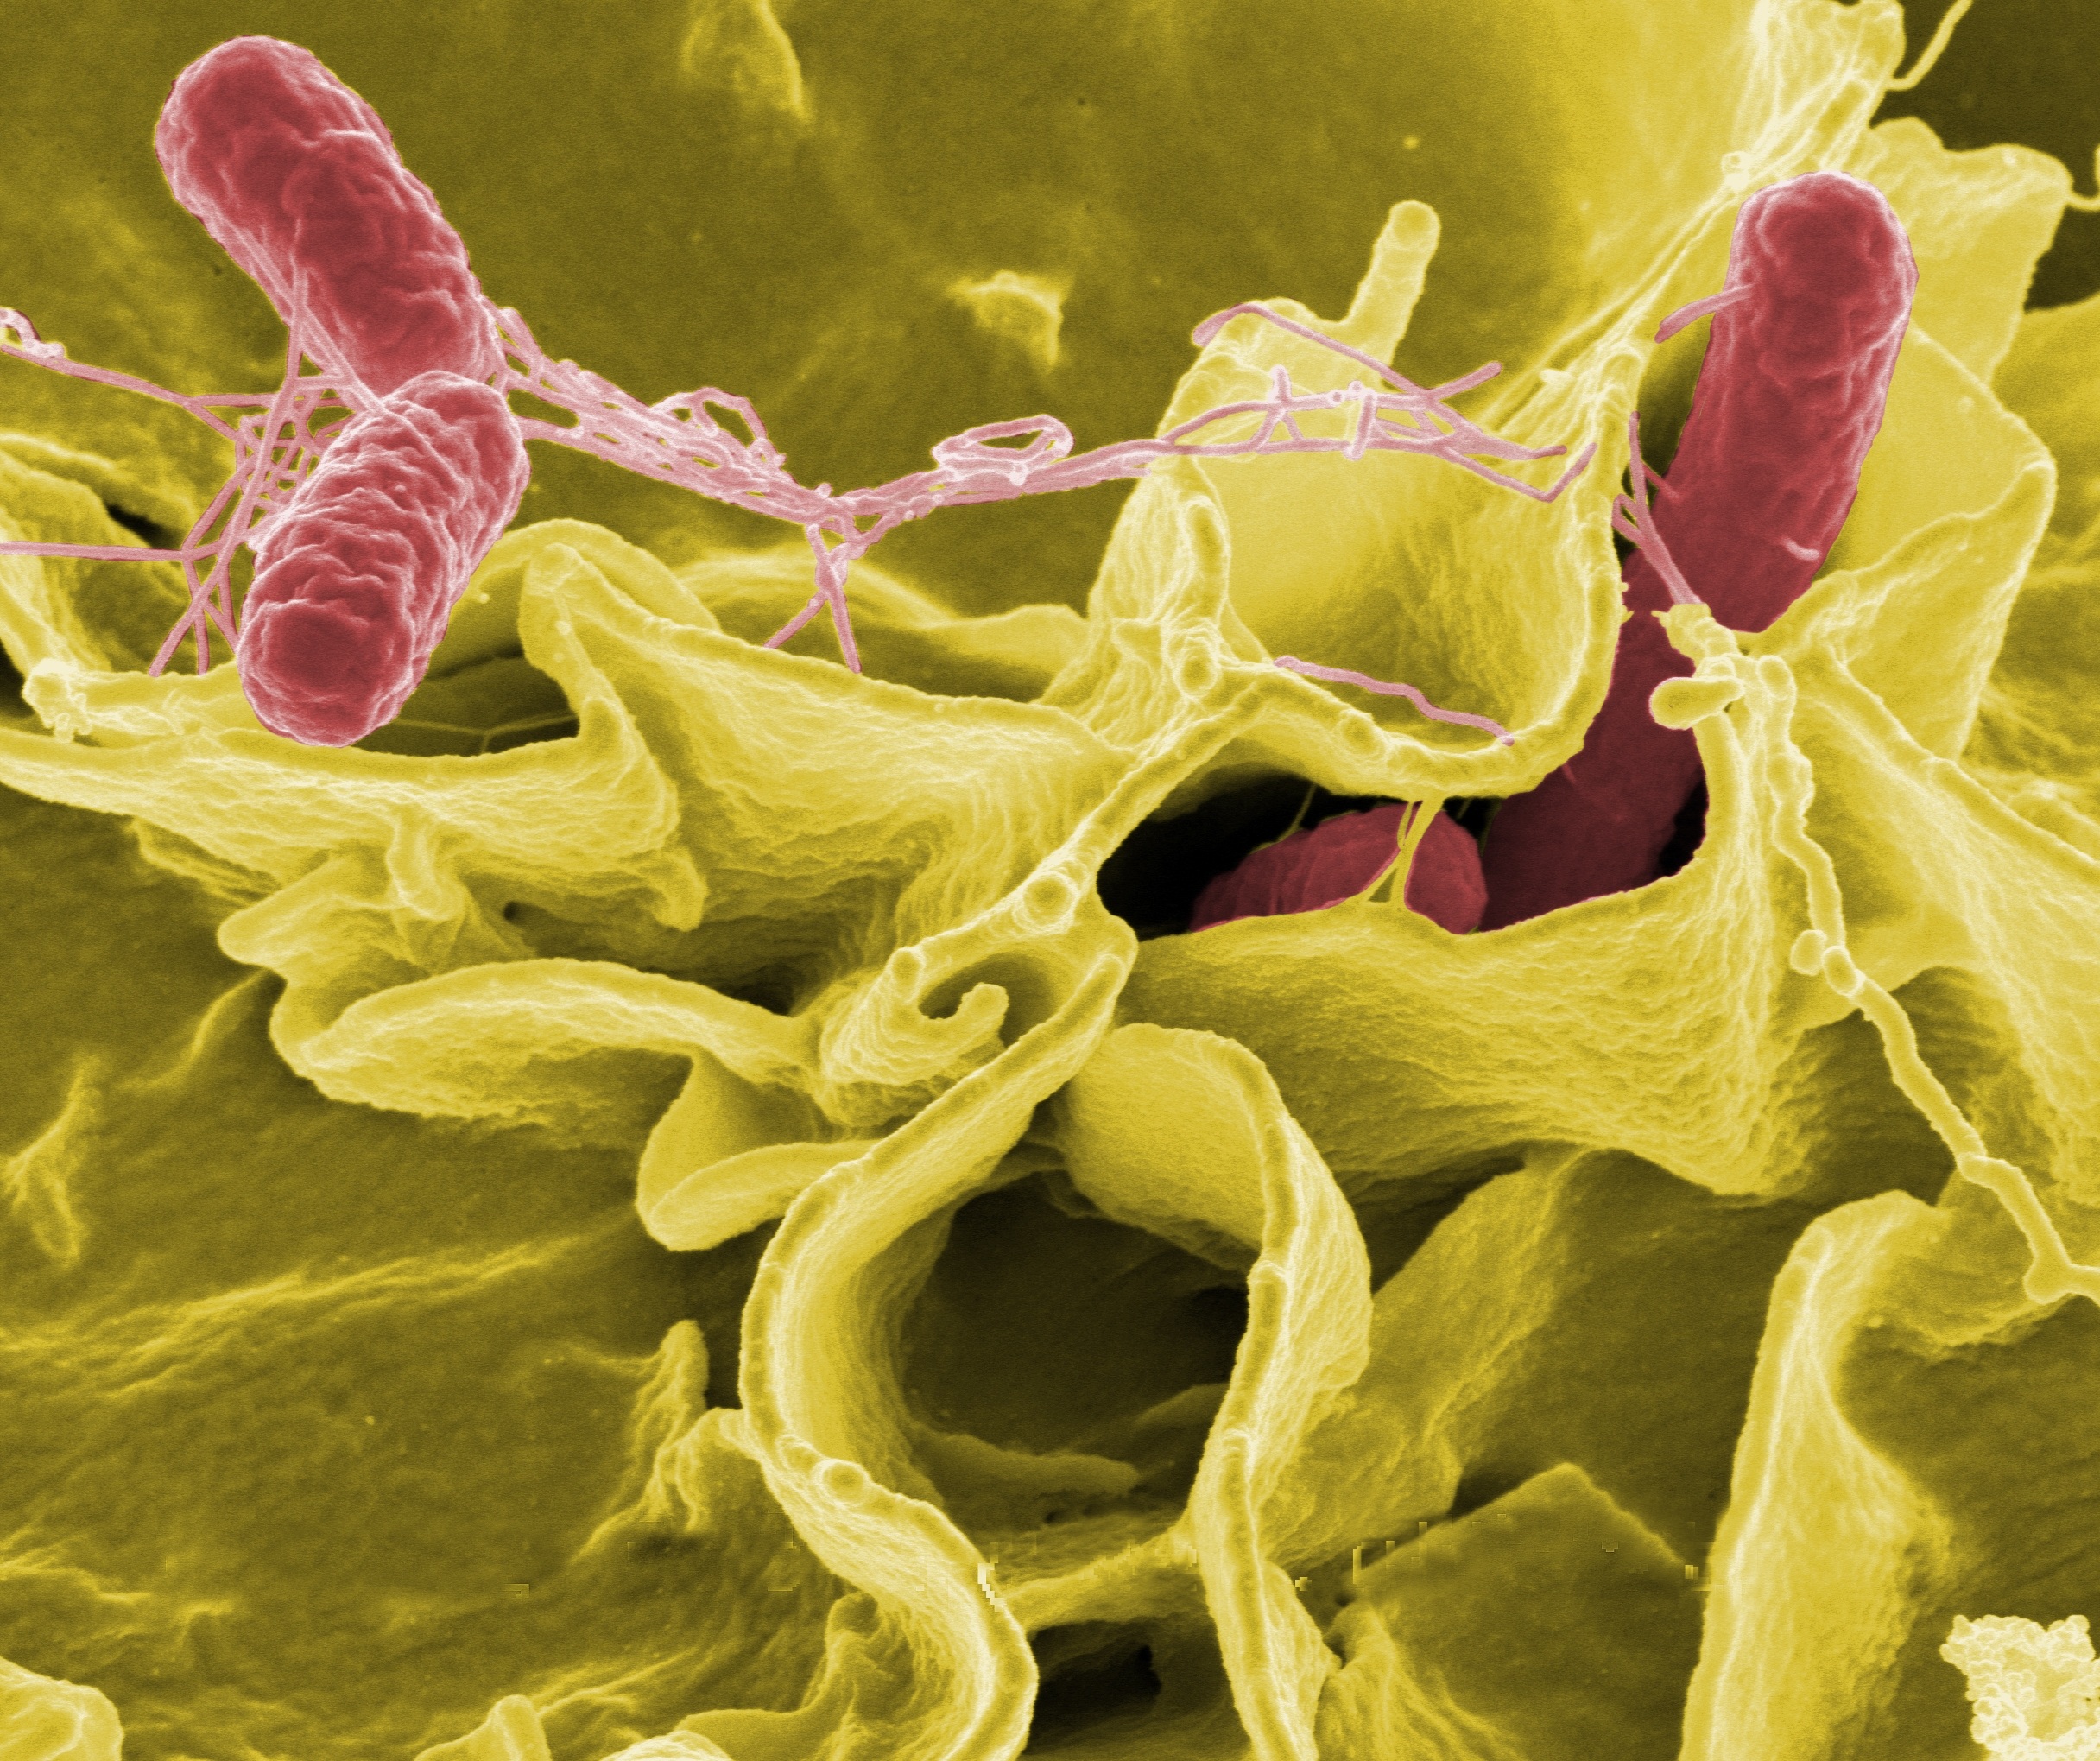 Salmonella microscopic image